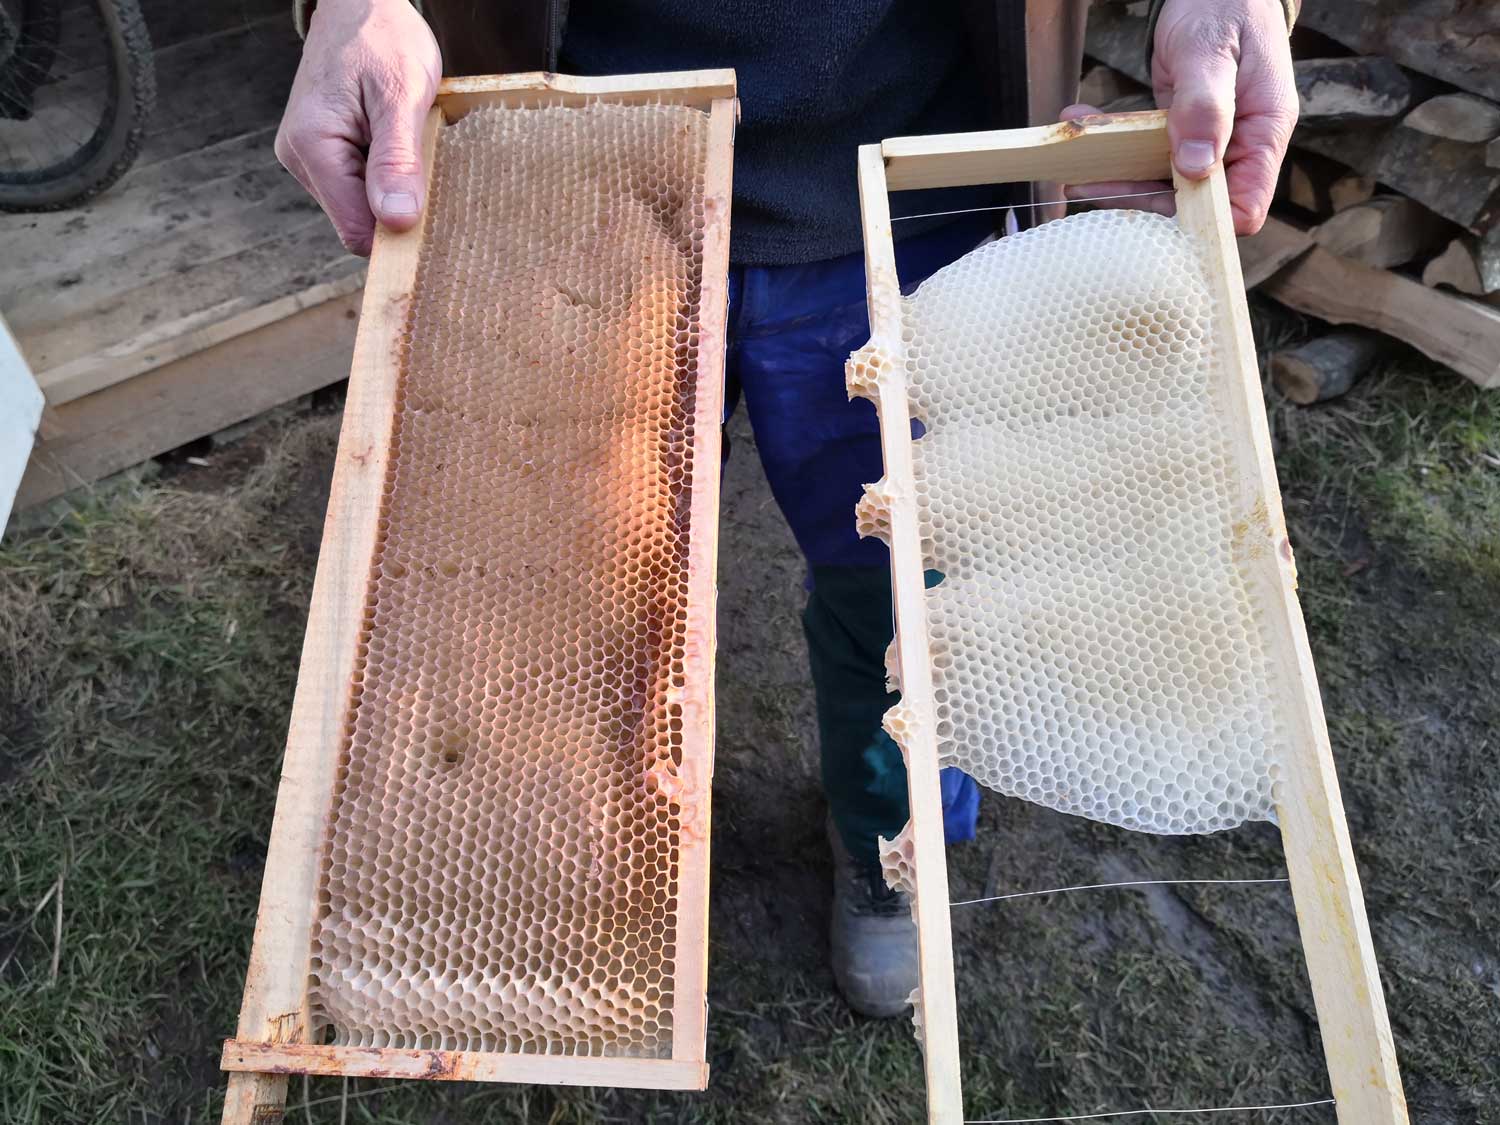 Le cadre de droite est composé de cellules en cire formées par les abeilles elles-mêmes. À gauche il s’agit de cire achetée que Denis ne veut plus mettre dans ses ruches. C’est plus écologique (la cire achetée concentre de nombreux polluants) et cela laisse plus de liberté à l’abeille © Globe Reporters